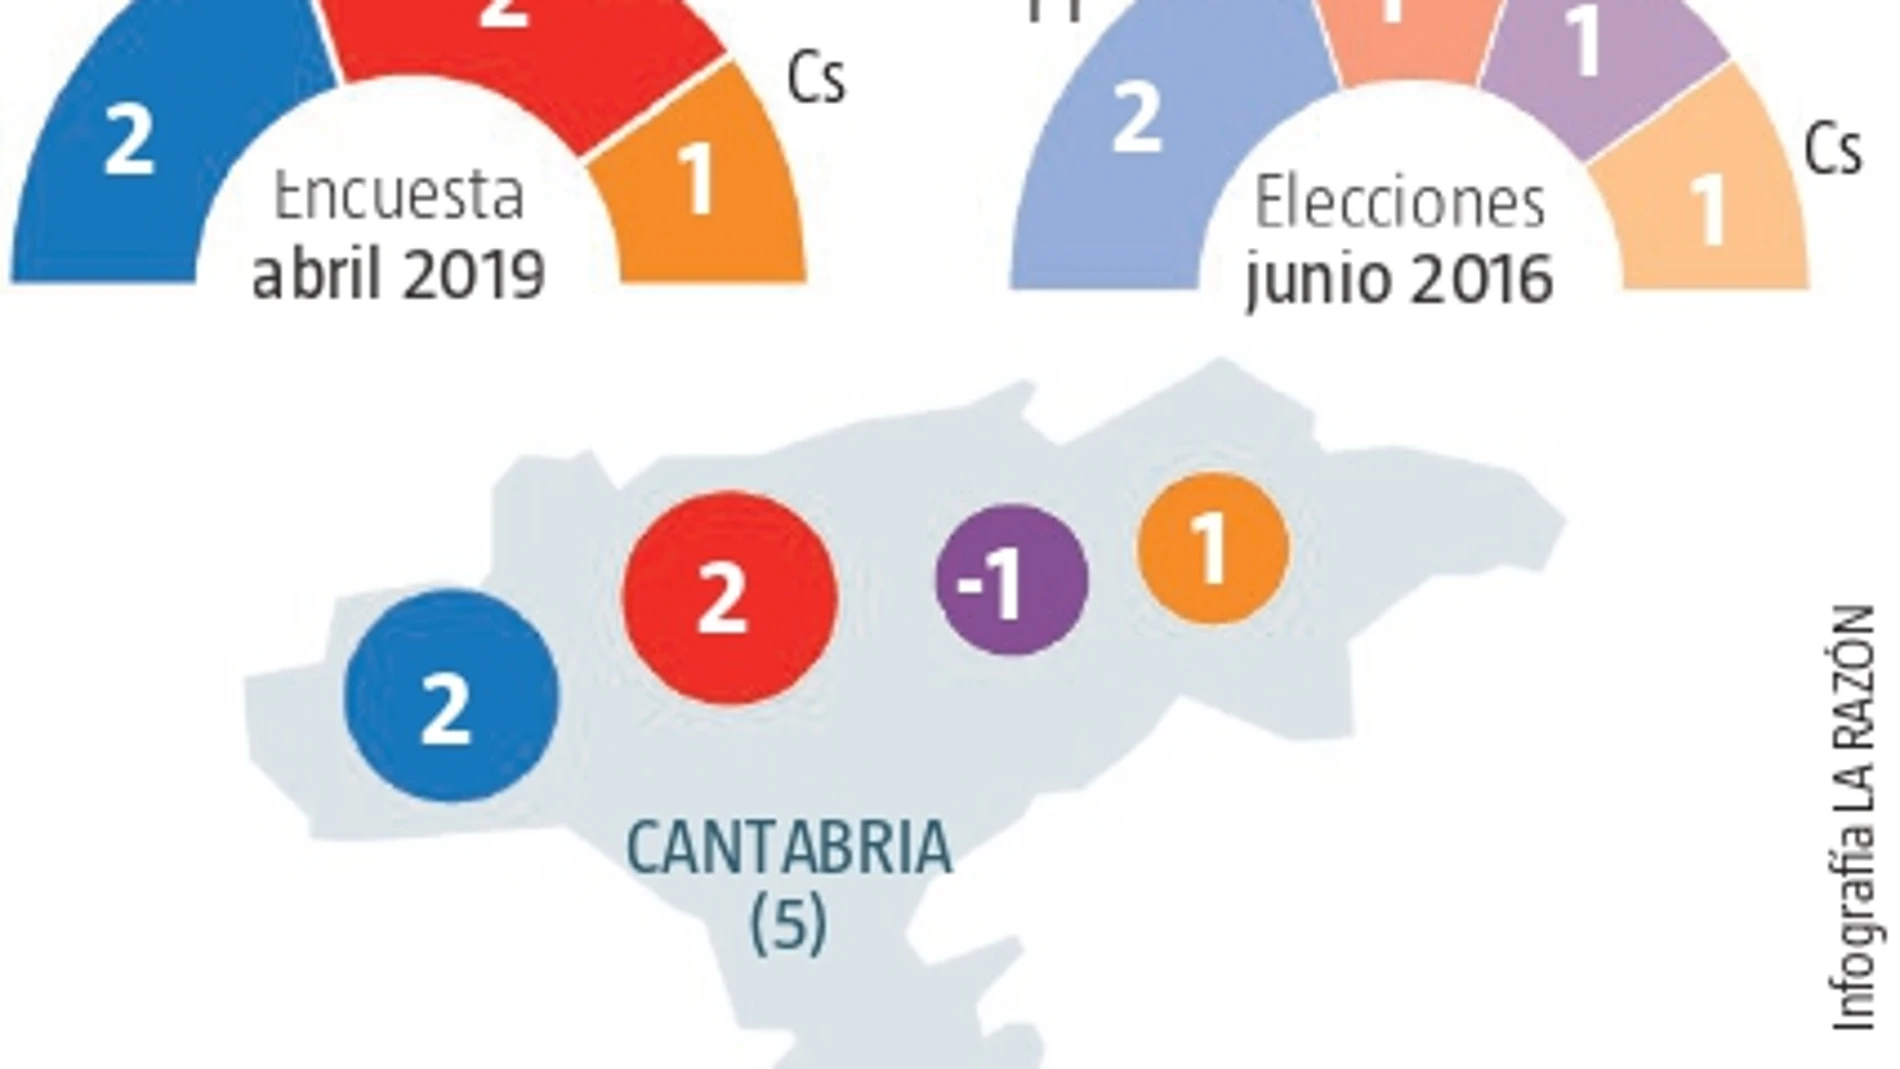 Encuesta electoral Cantabria: El PSOE mejora a costa de Podemos